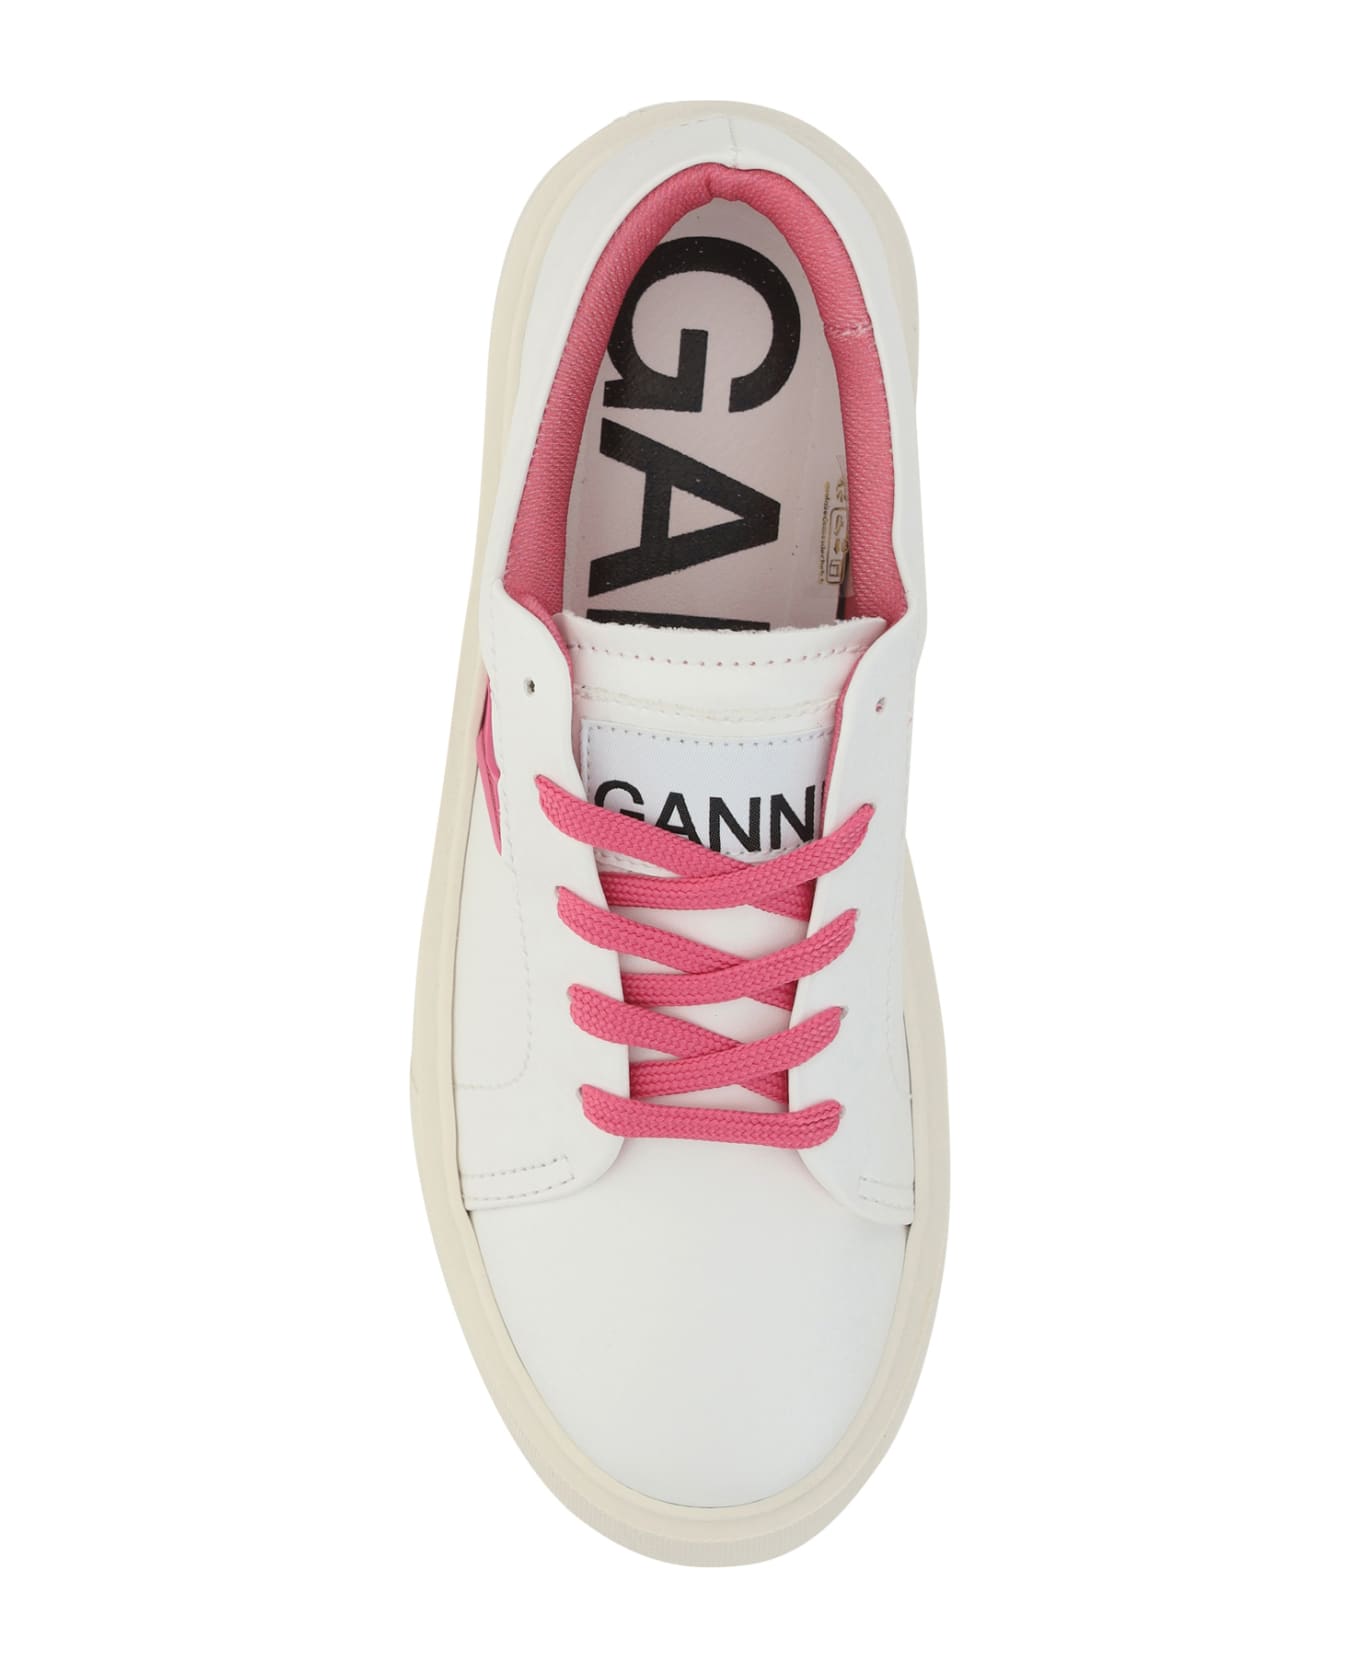 Ganni Sneakers - Shocking Pink スニーカー